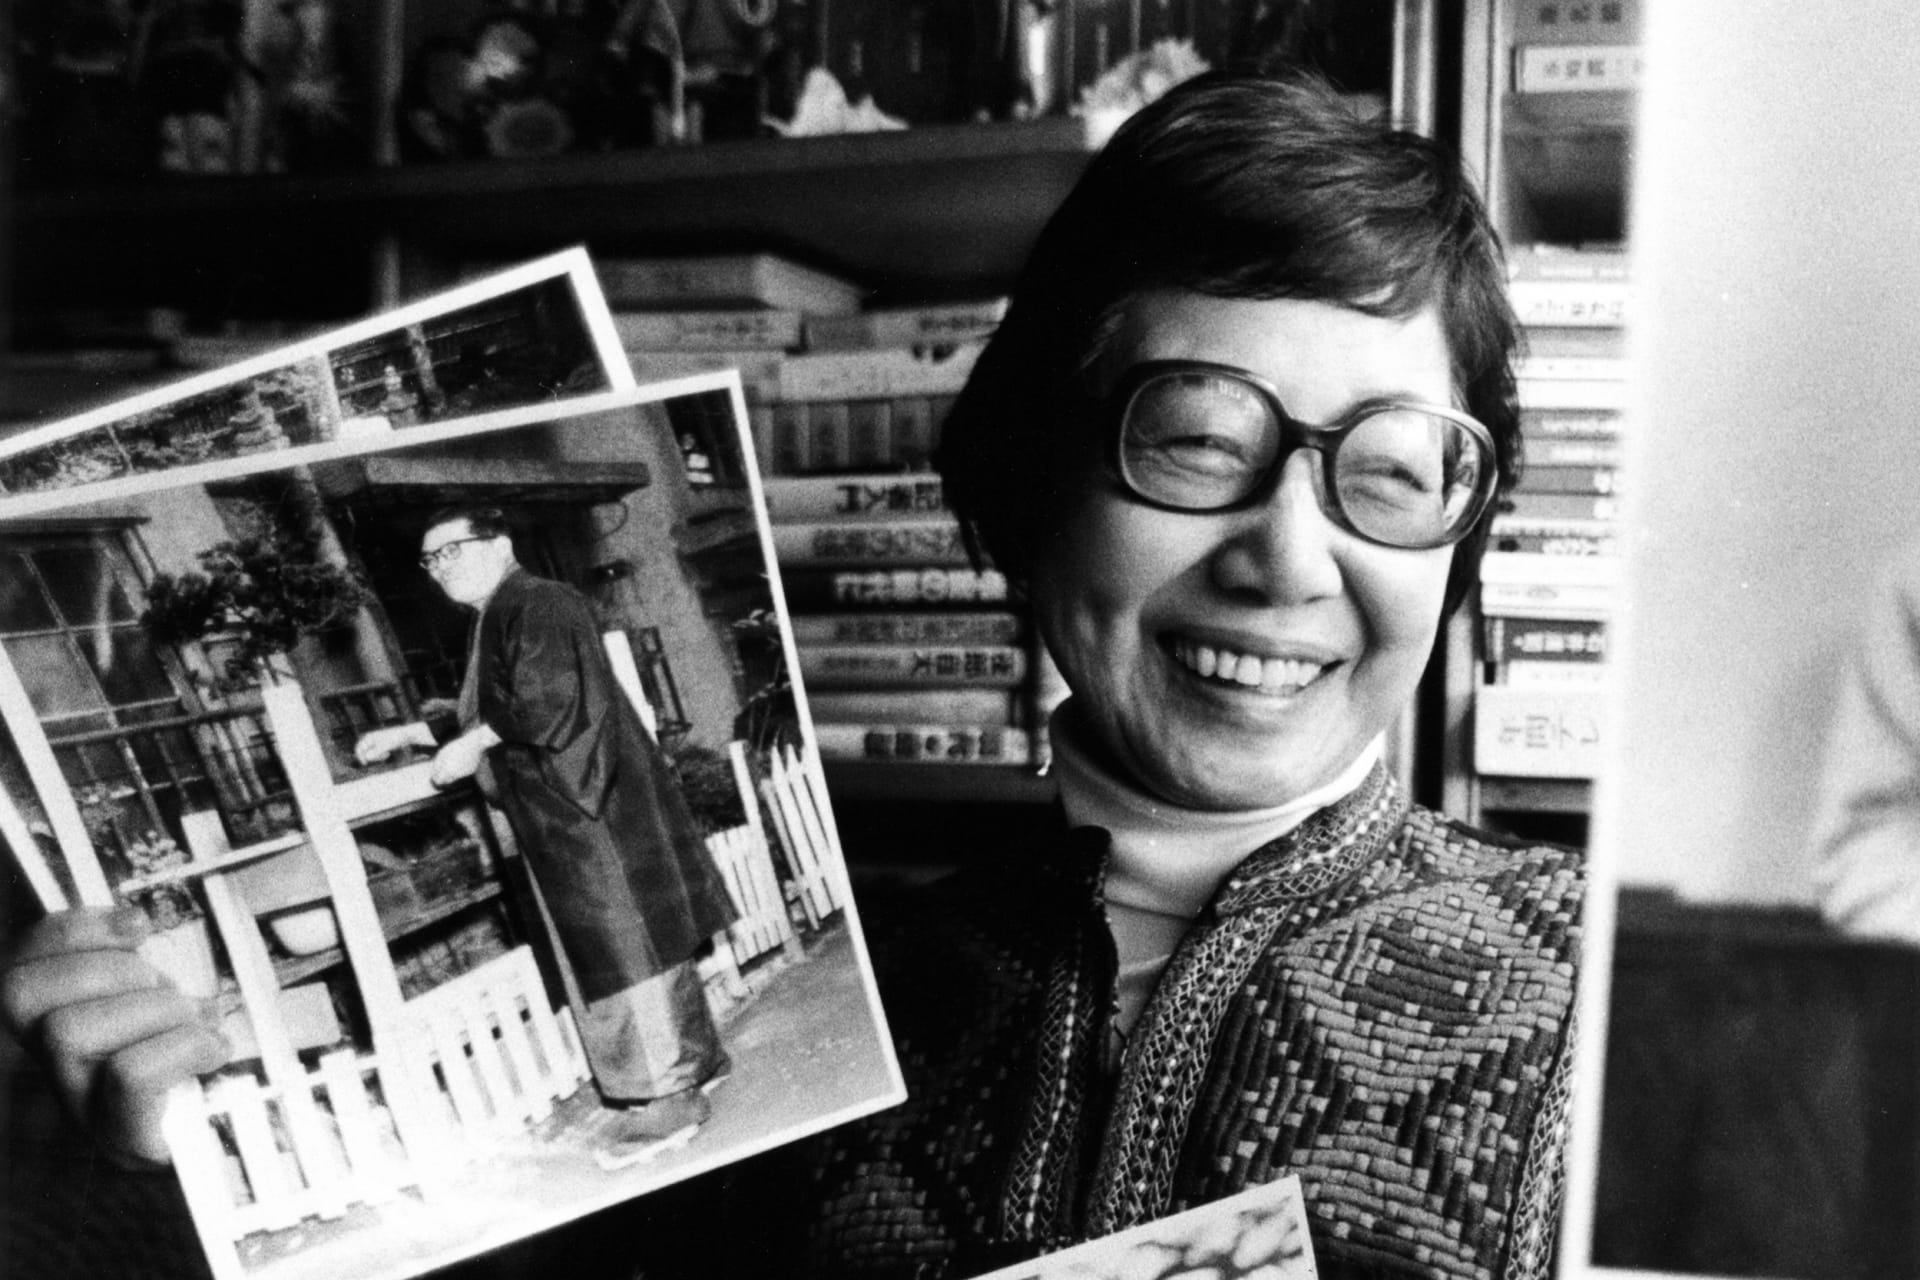 وفاة أول مصوّرة صحفيّة يابانيّة عن عمر يناهز 107 عامًا